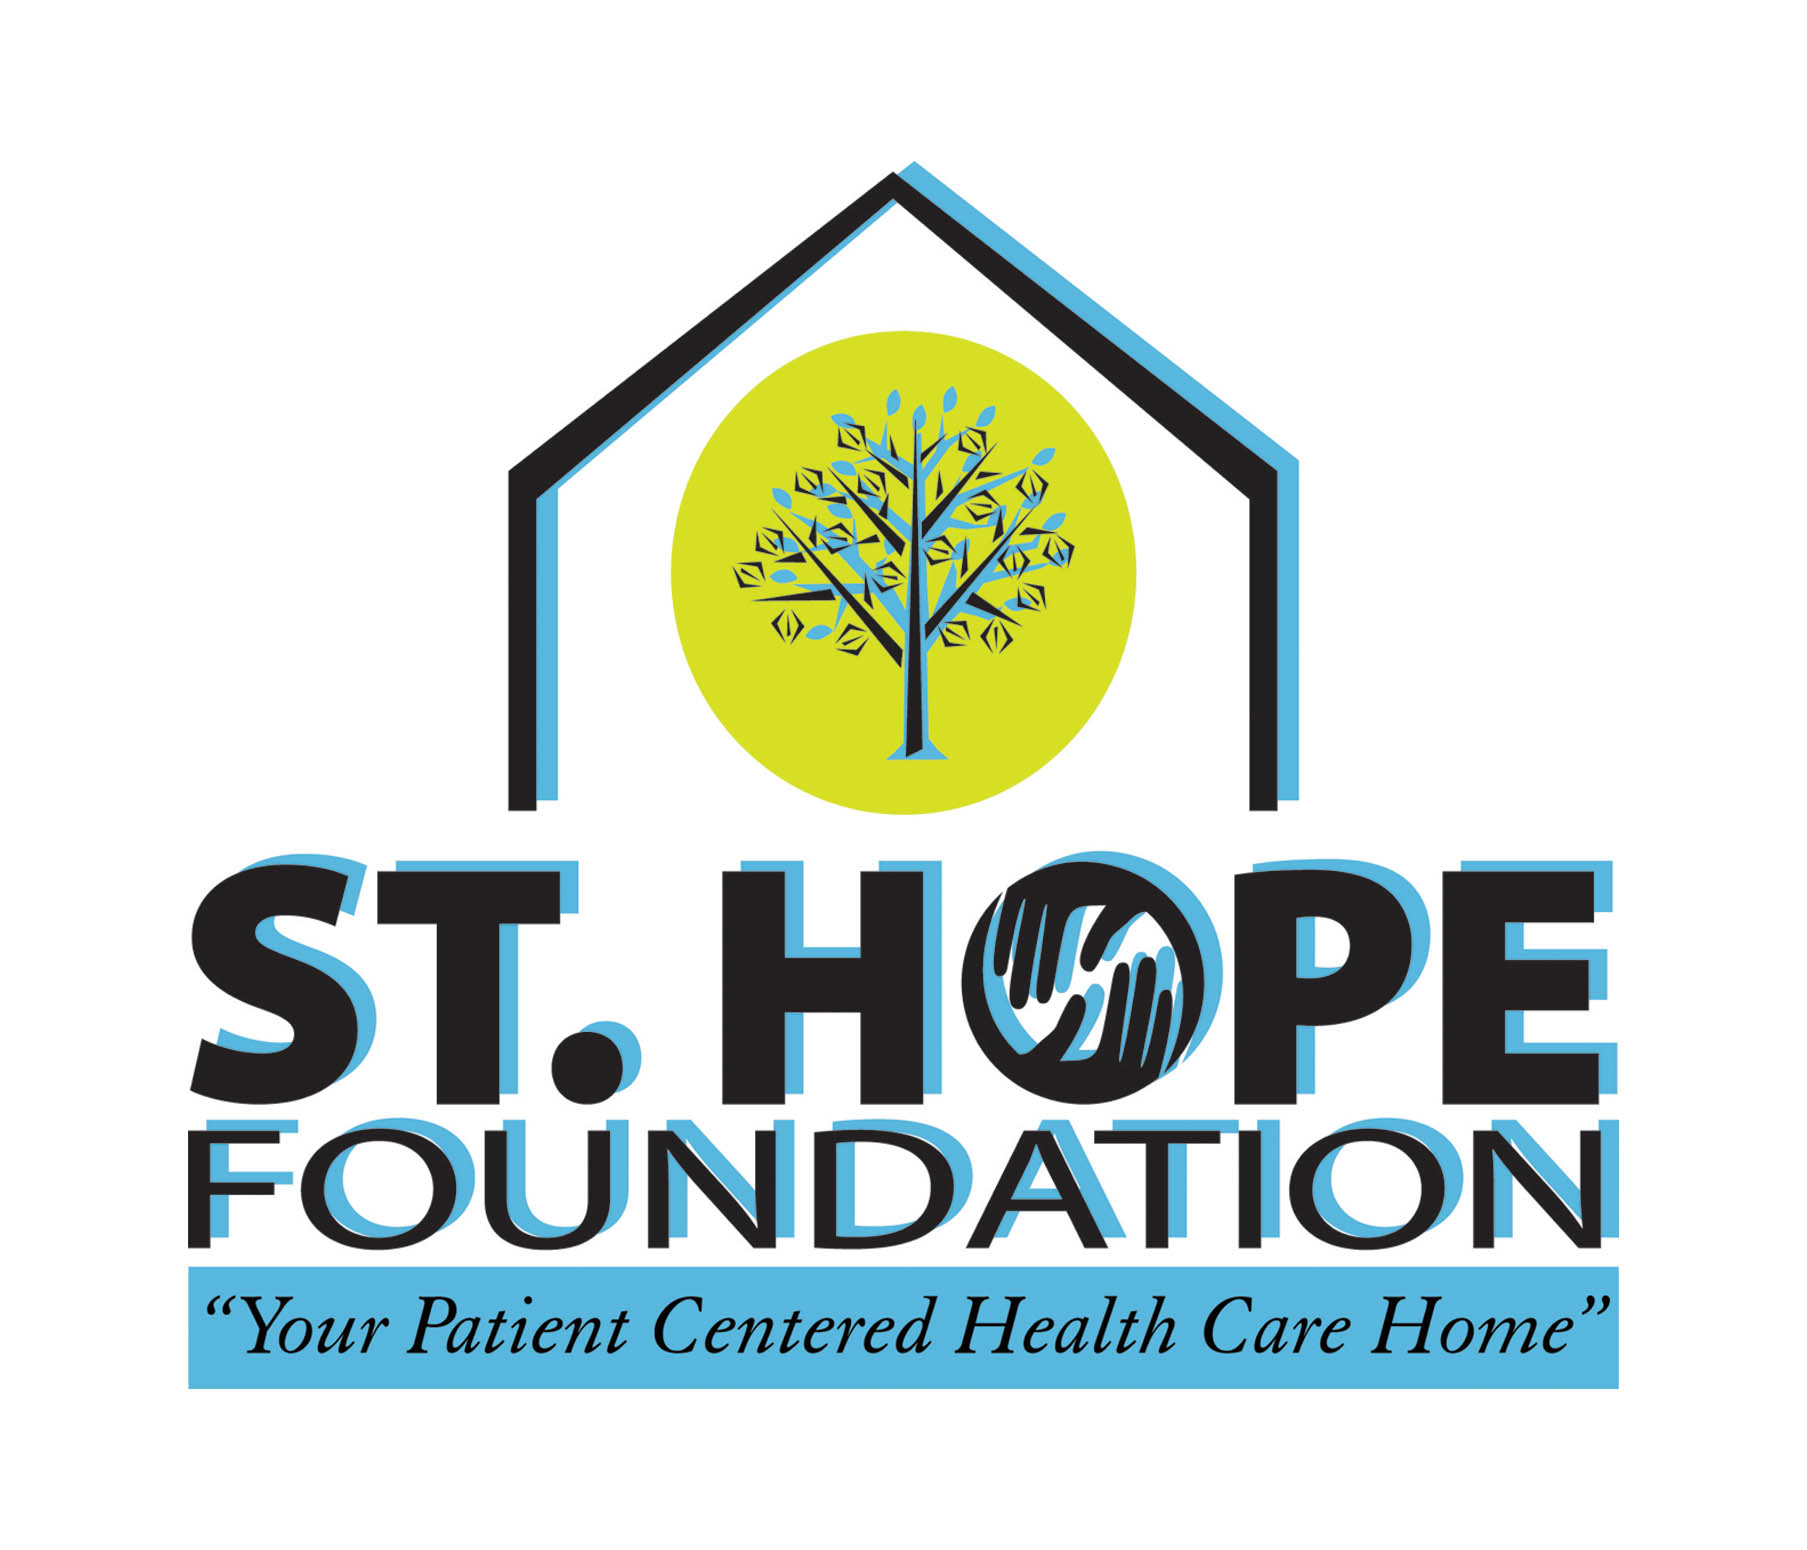 St Hope Foundation logo